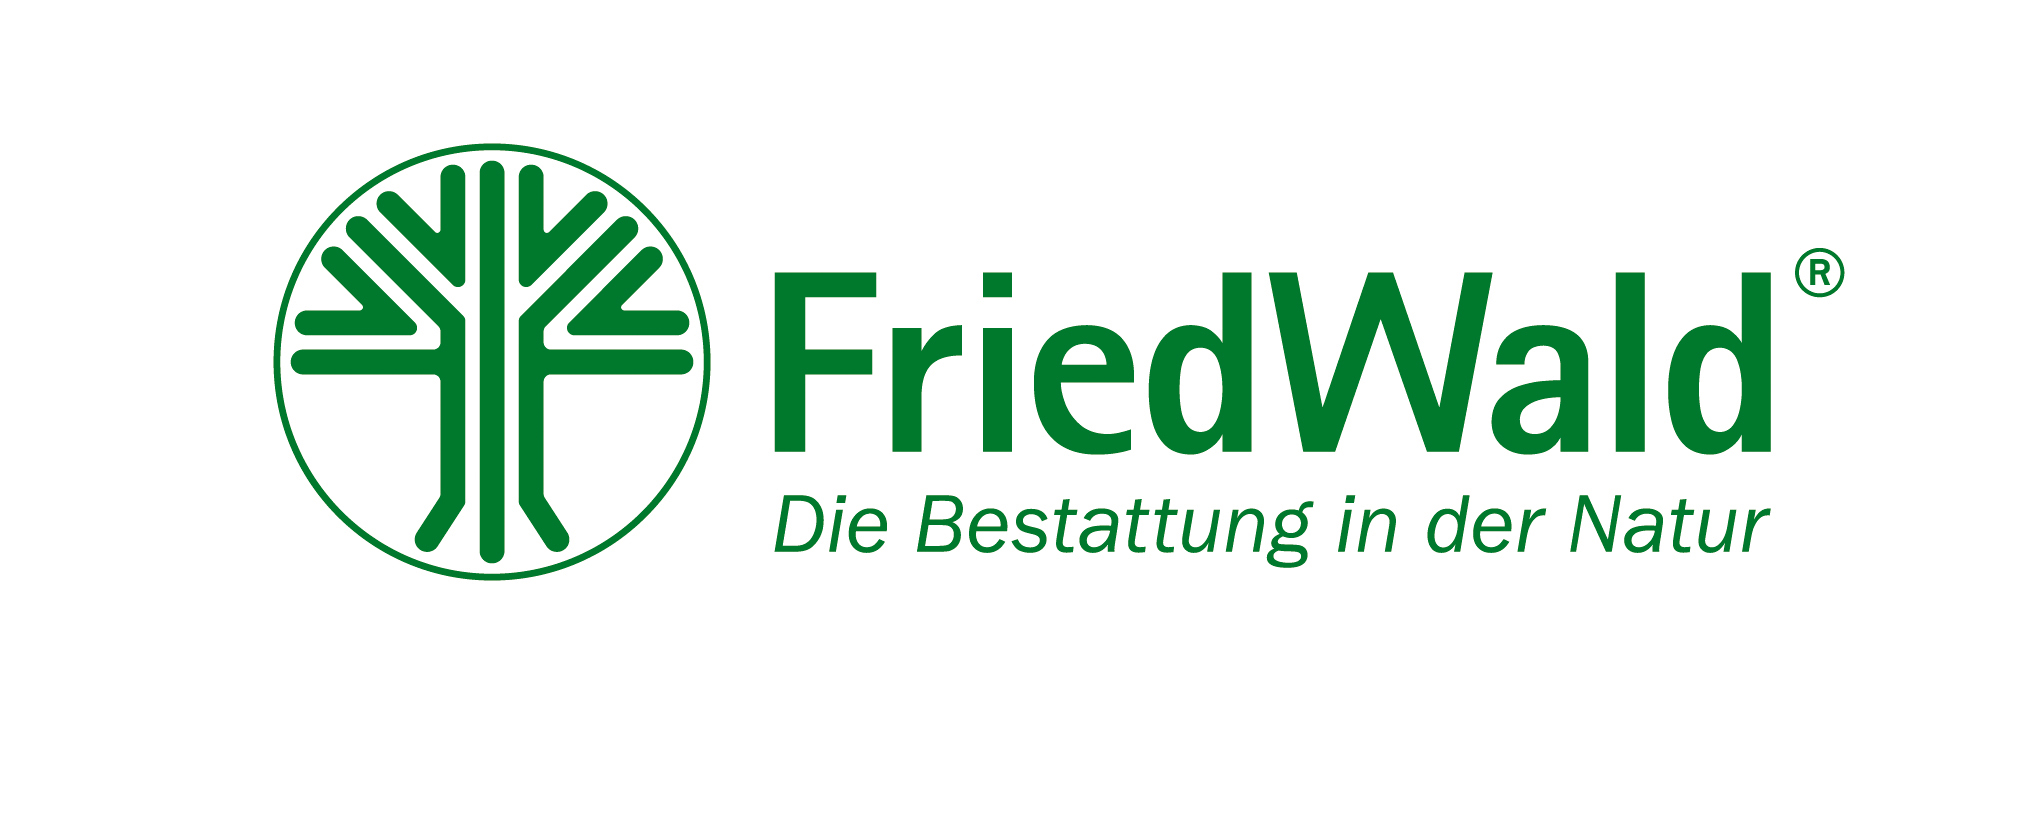 Friedwald